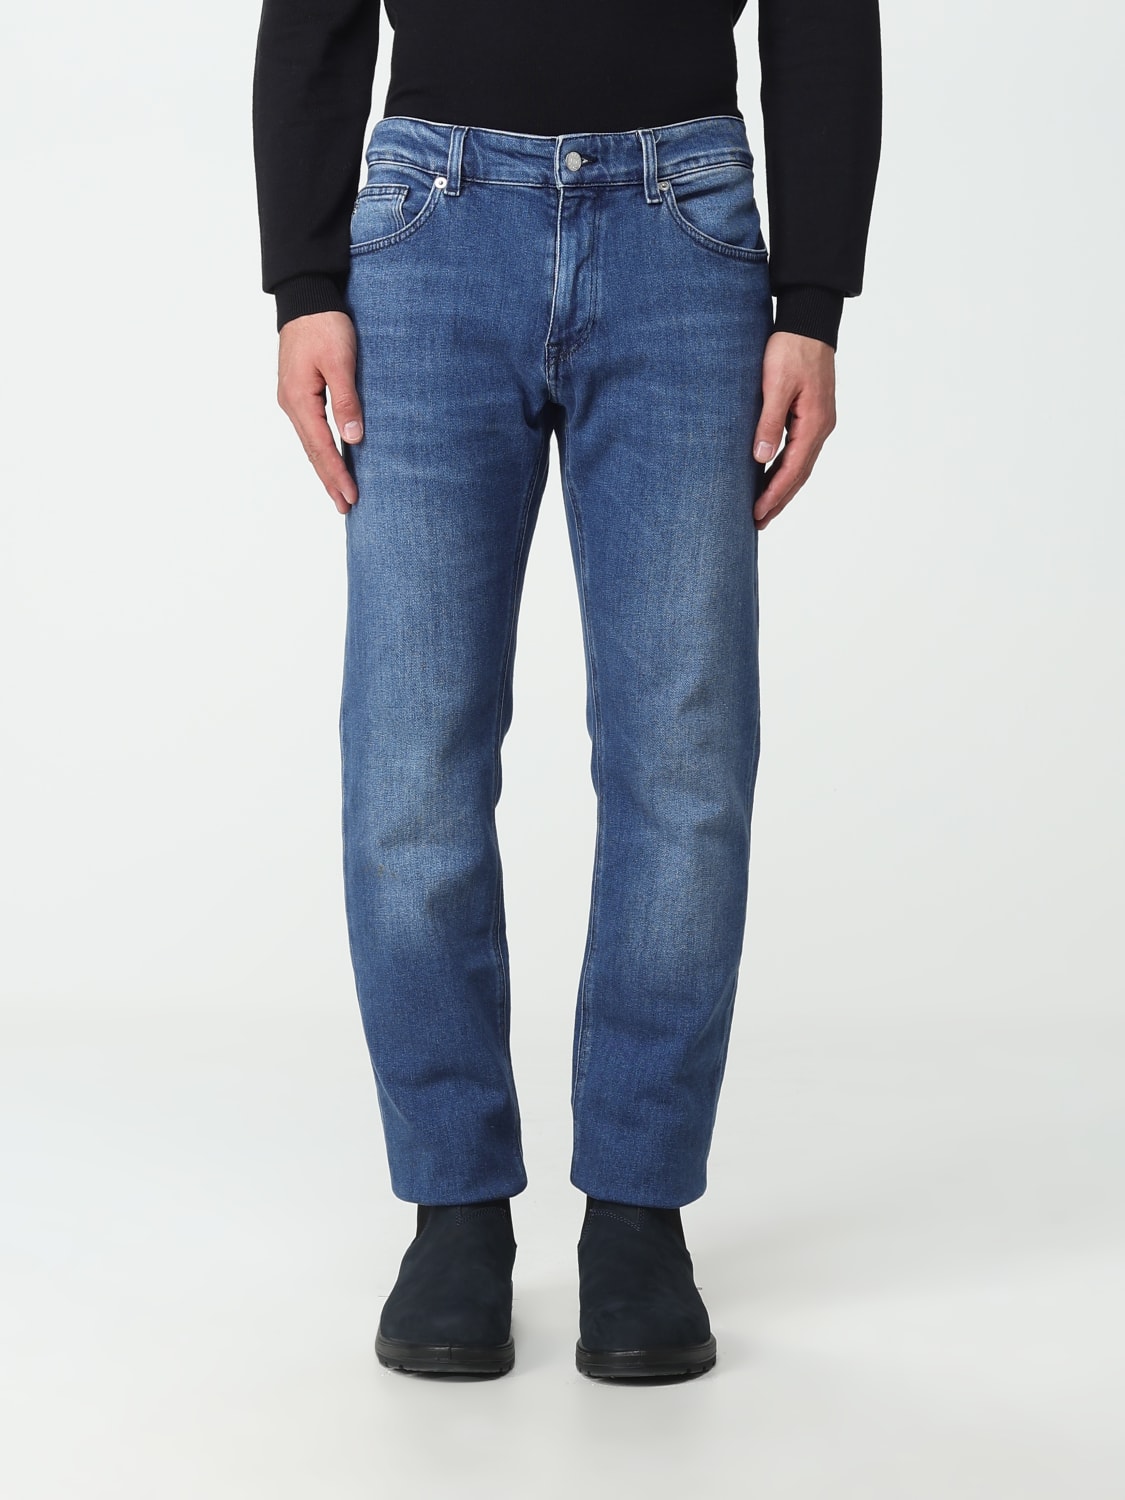 Rudyard Kipling Forståelse med undtagelse af BOSS: jeans for man - Denim | Boss jeans 50504500 online at GIGLIO.COM